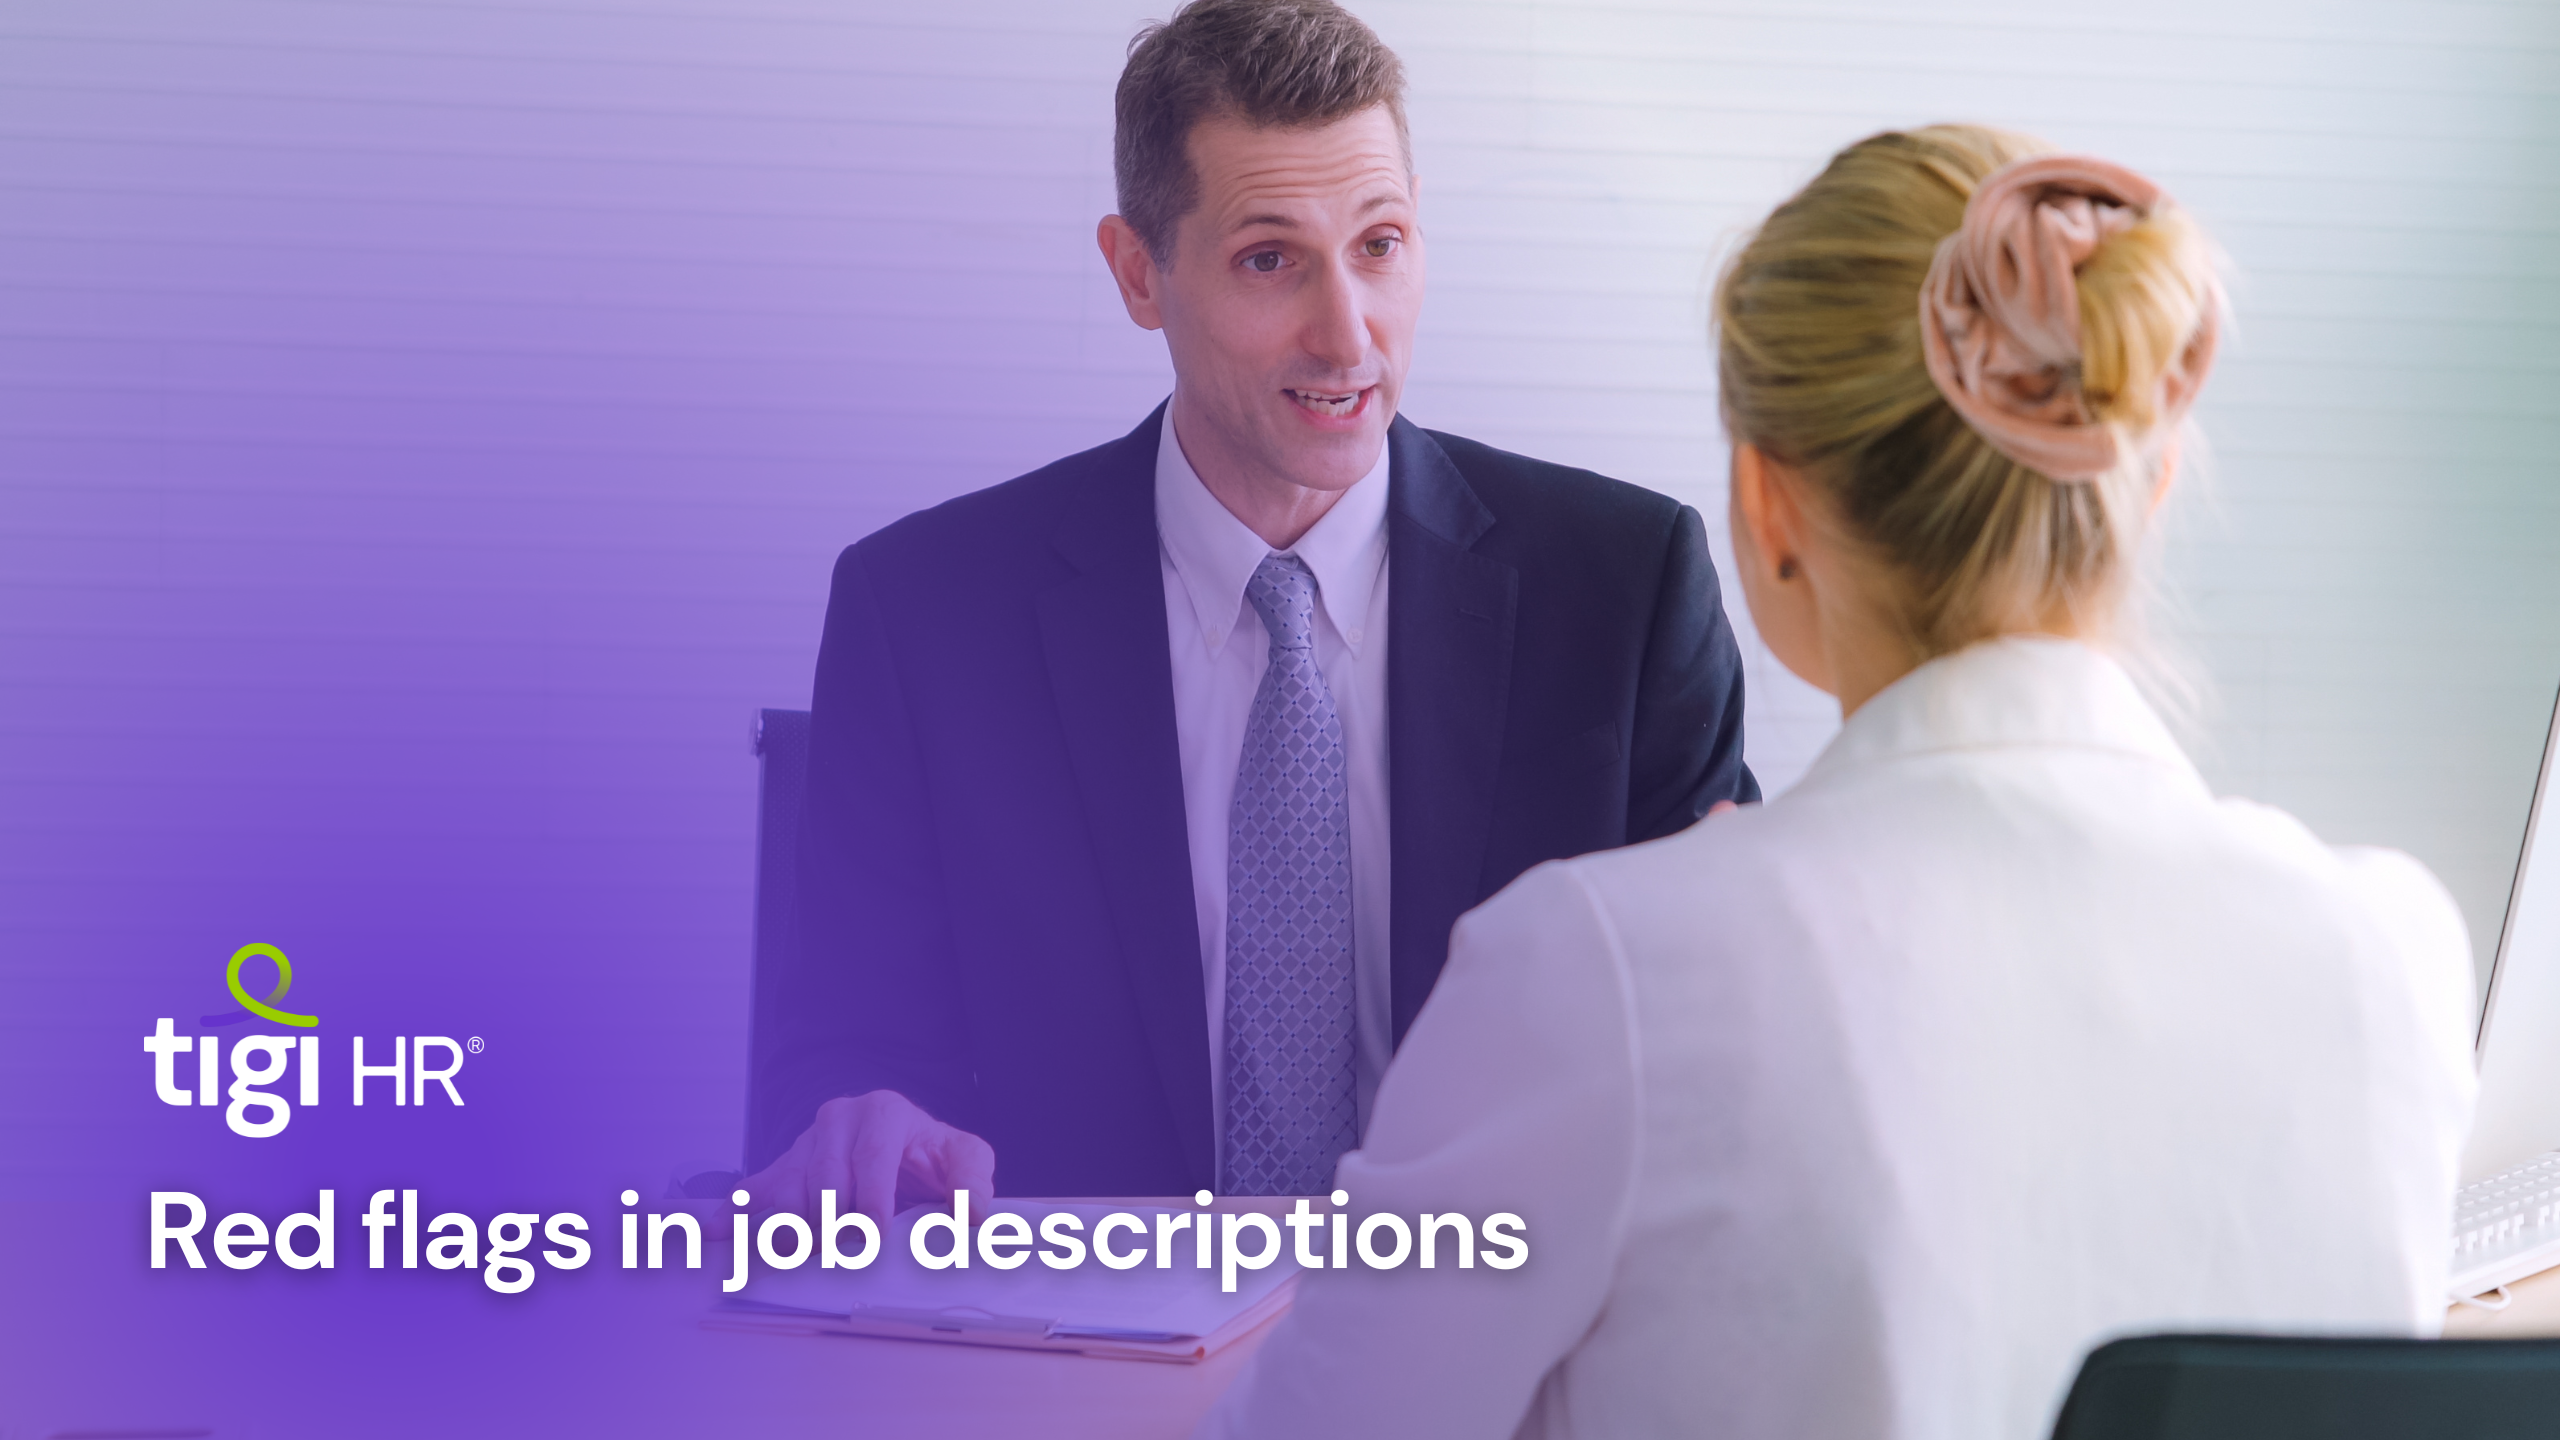 Red flags in job descriptions. Find jobs at TIGI HR.